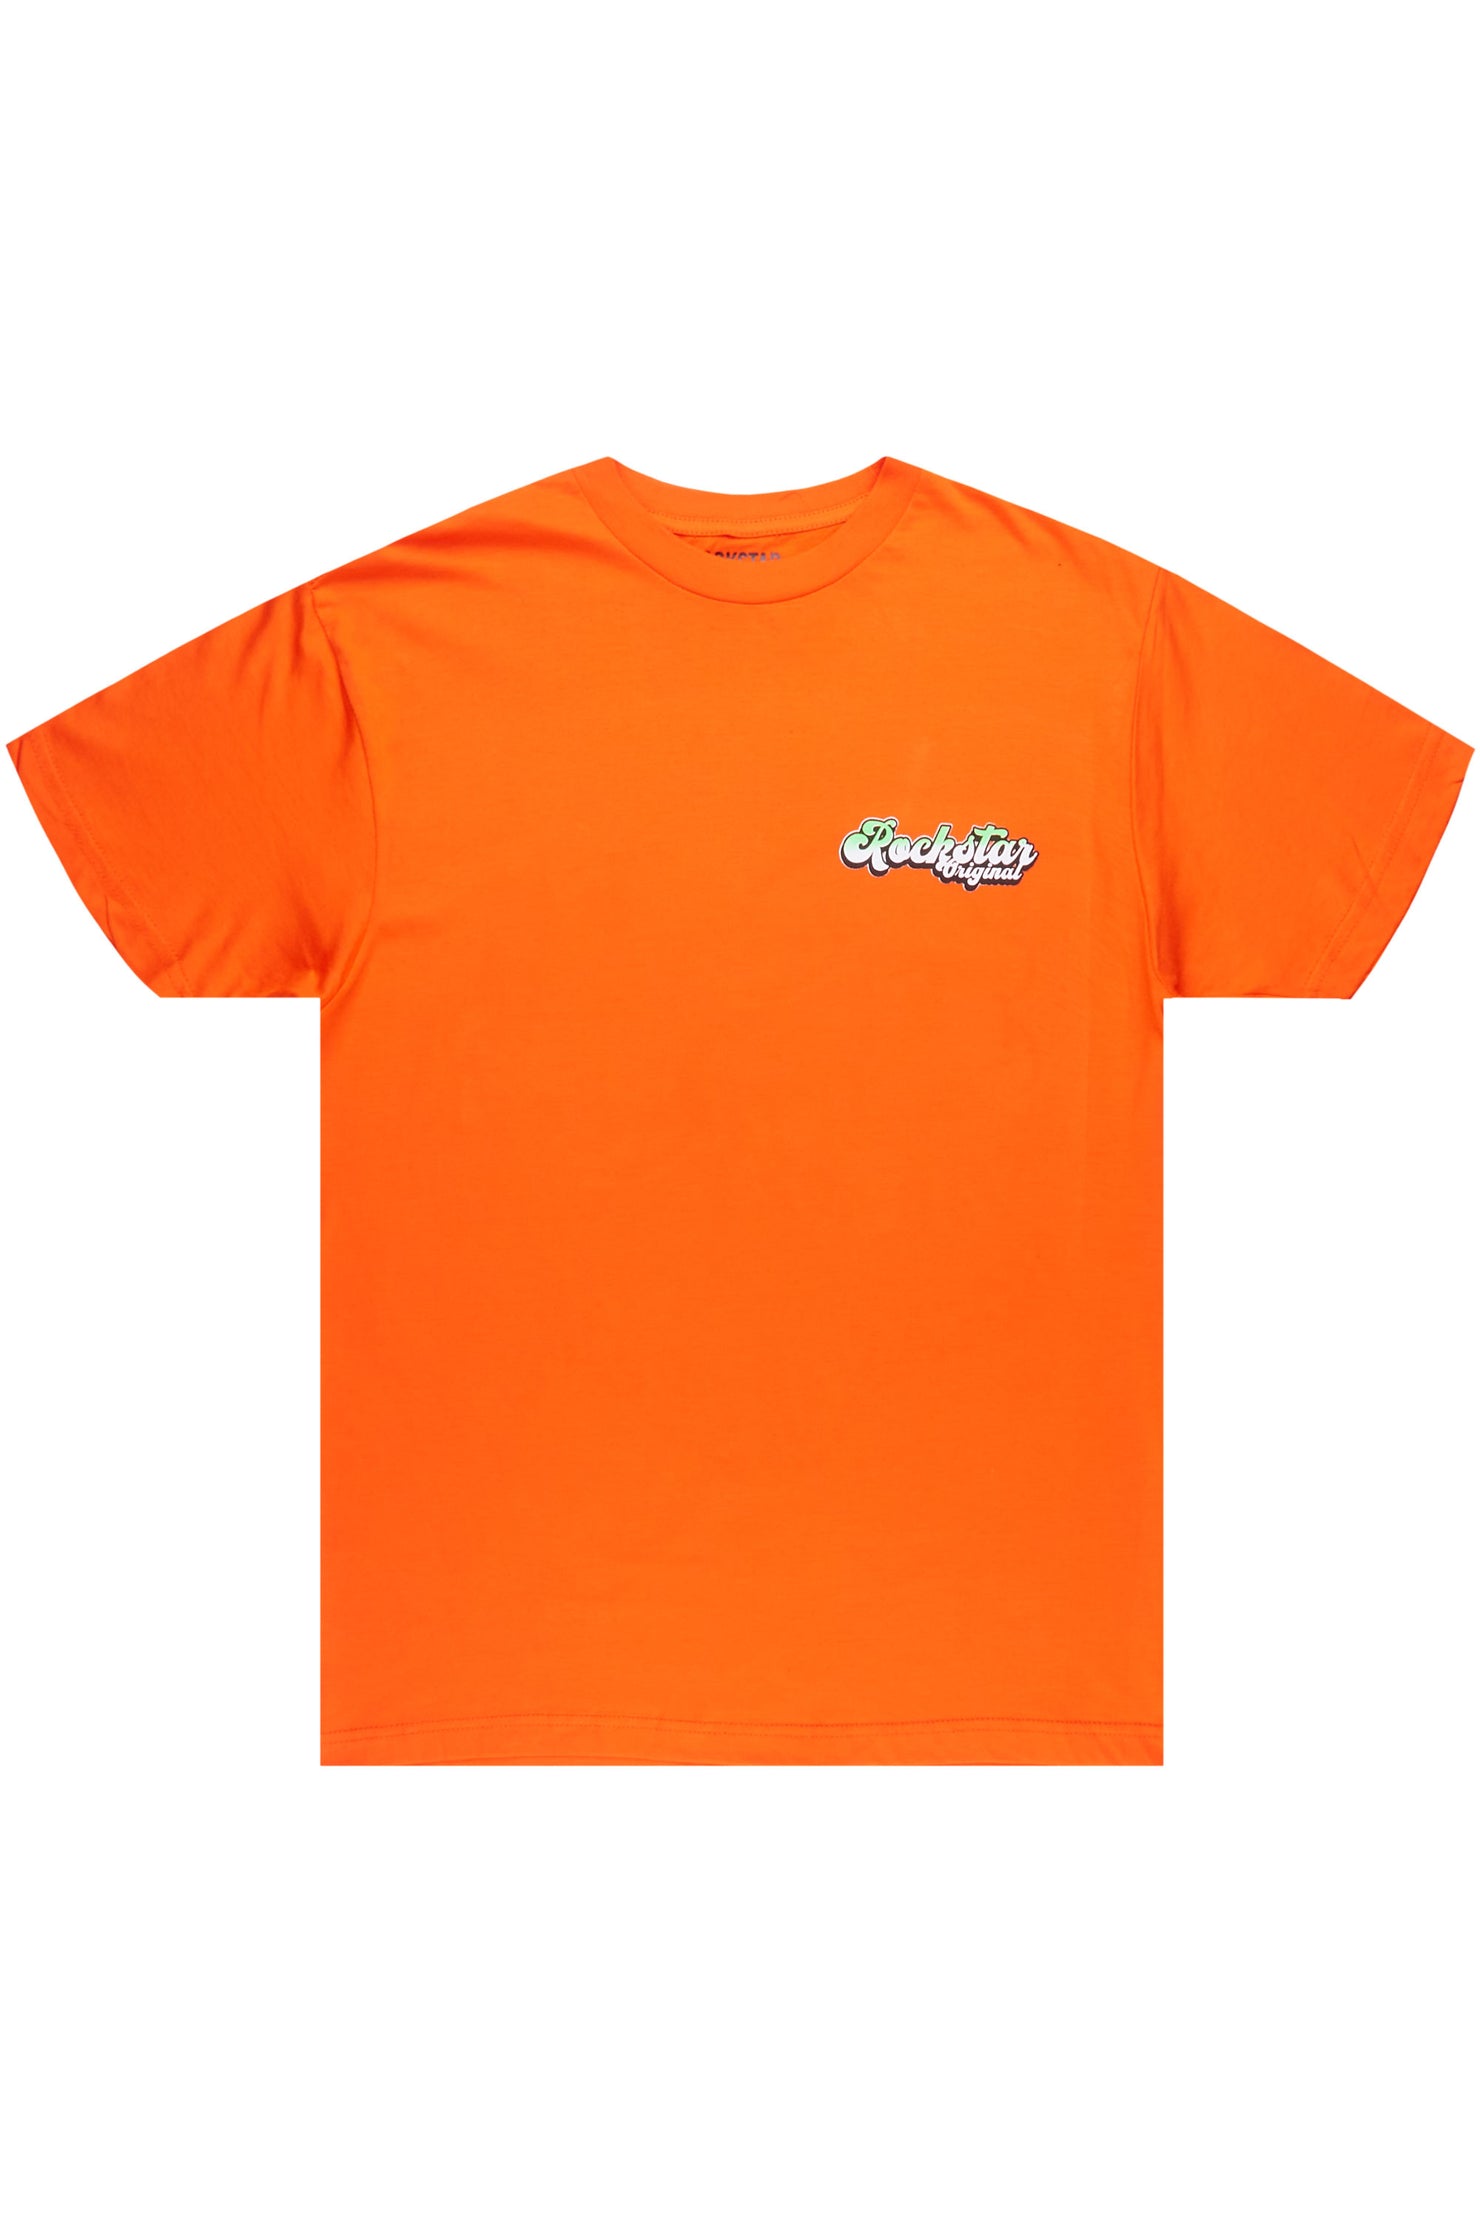 Highya Orange Graphic T-Shirt